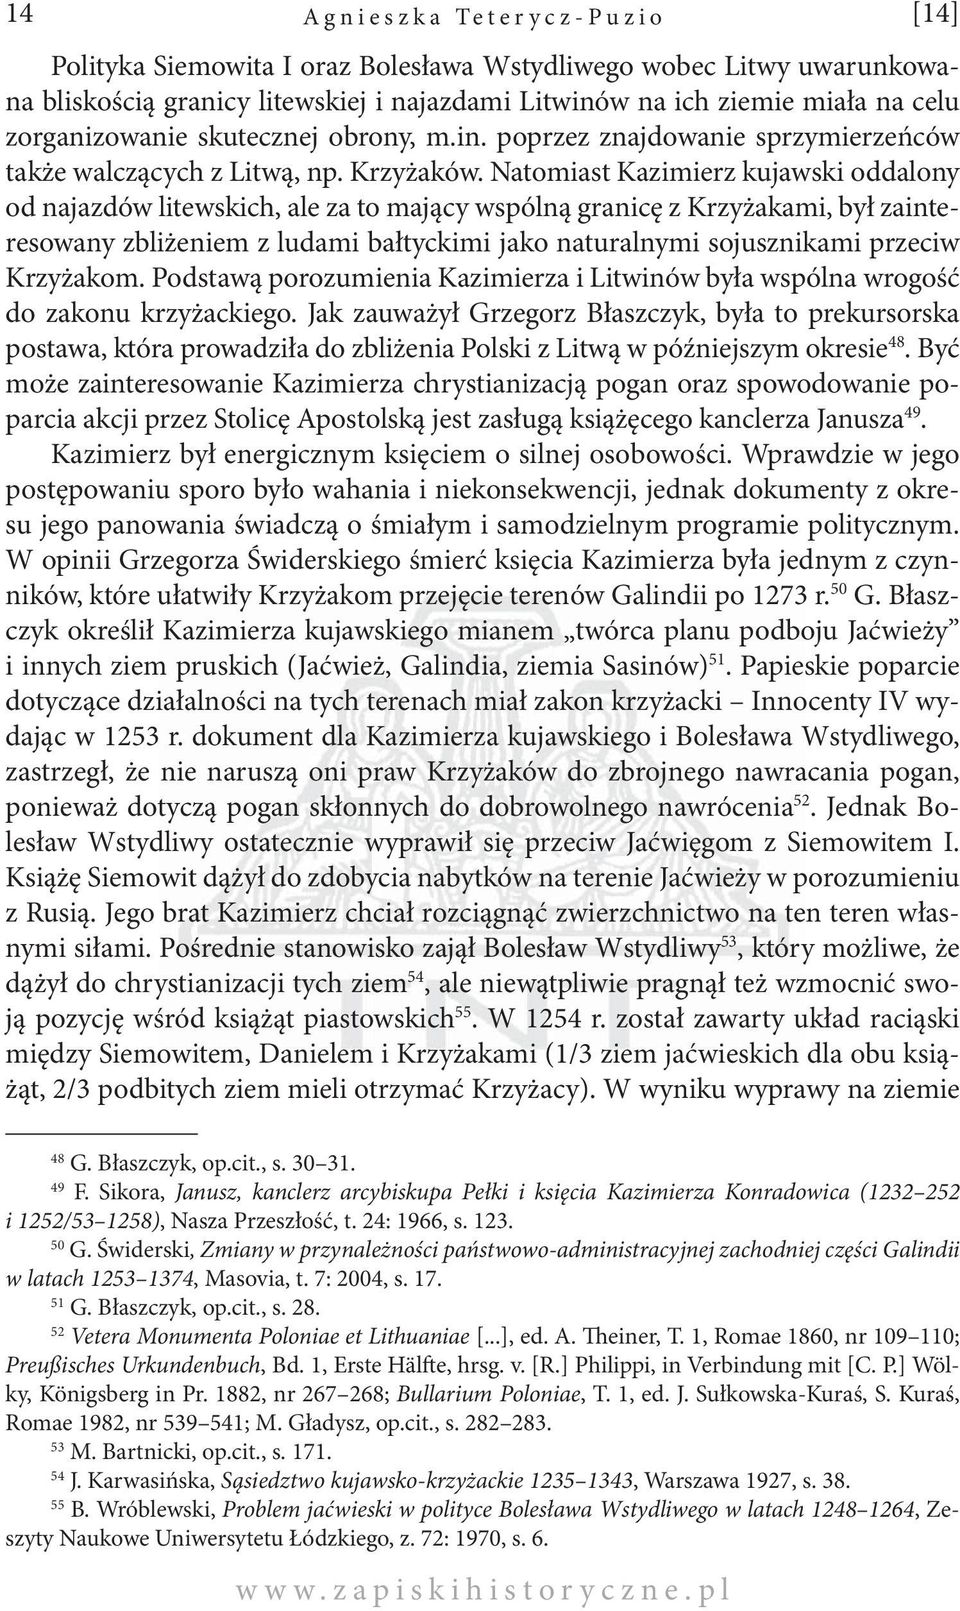 Natomiast Kazimierz kujawski oddalony od najazdów litewskich, ale za to mający wspólną granicę z Krzyżakami, był zainteresowany zbliżeniem z ludami bałtyckimi jako naturalnymi sojusznikami przeciw